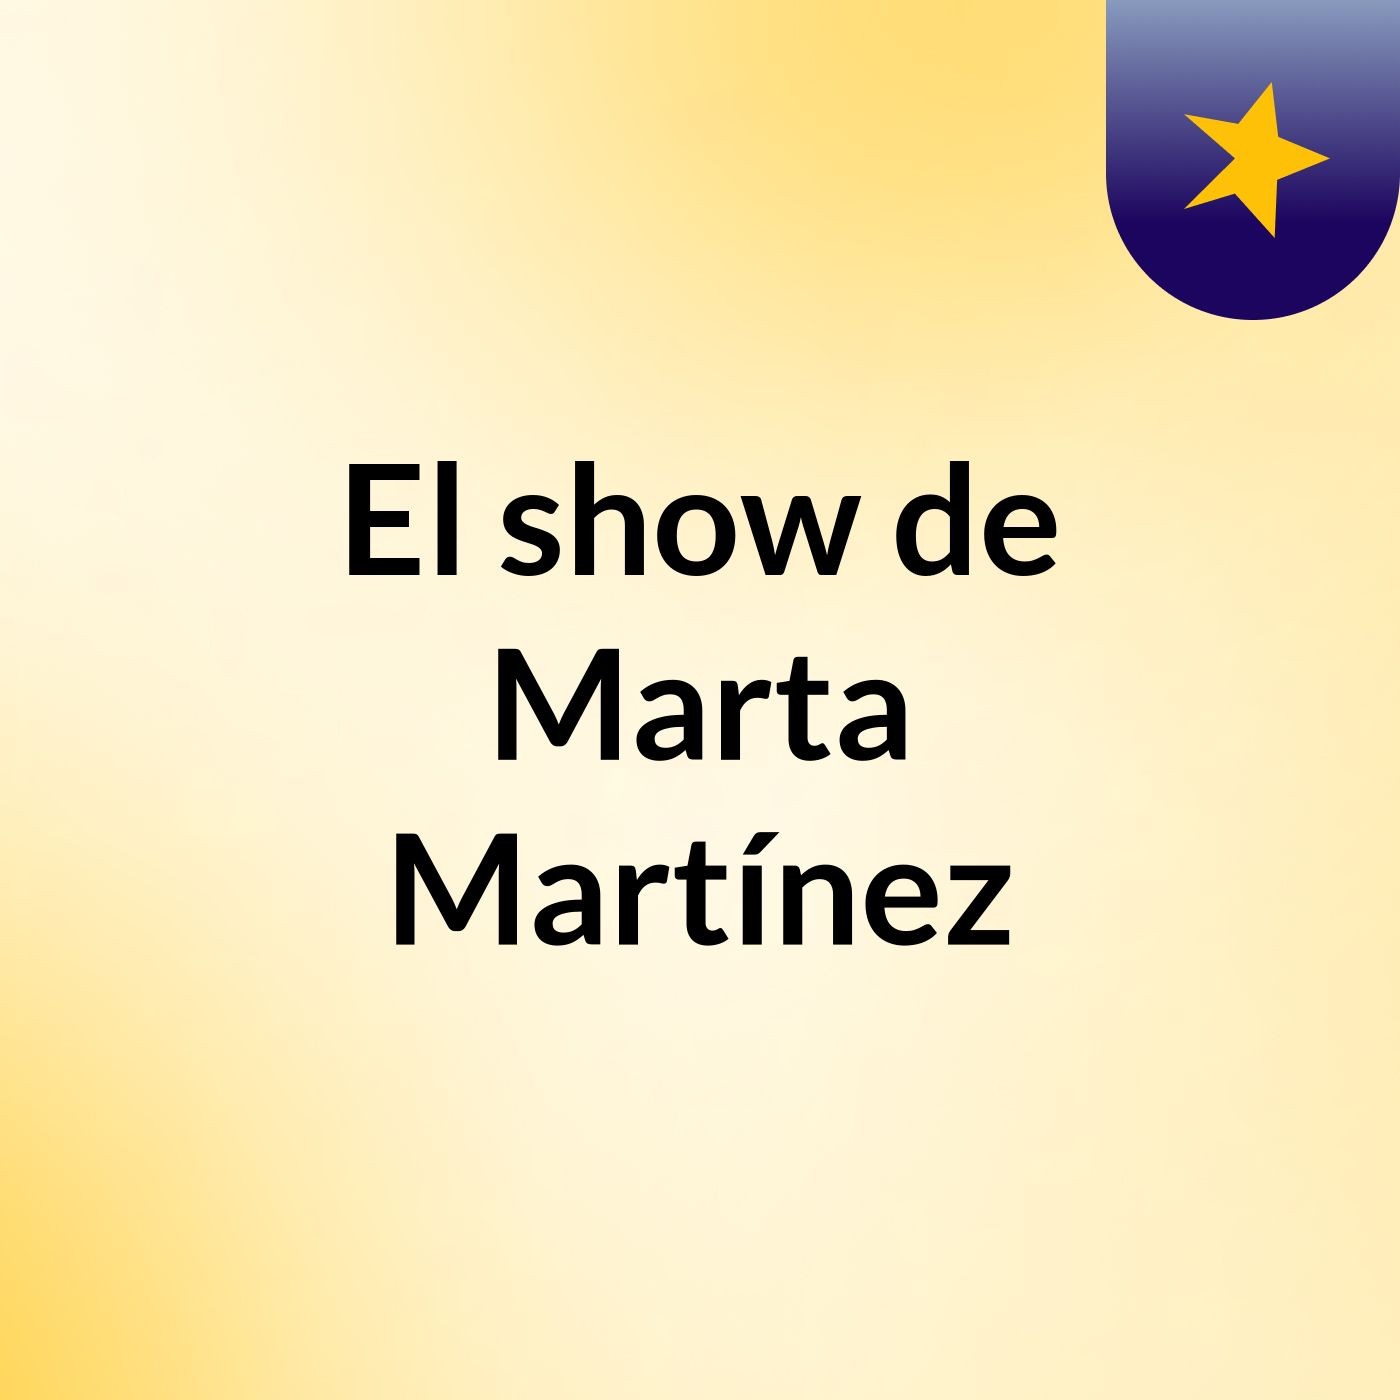 El show de Marta Martínez